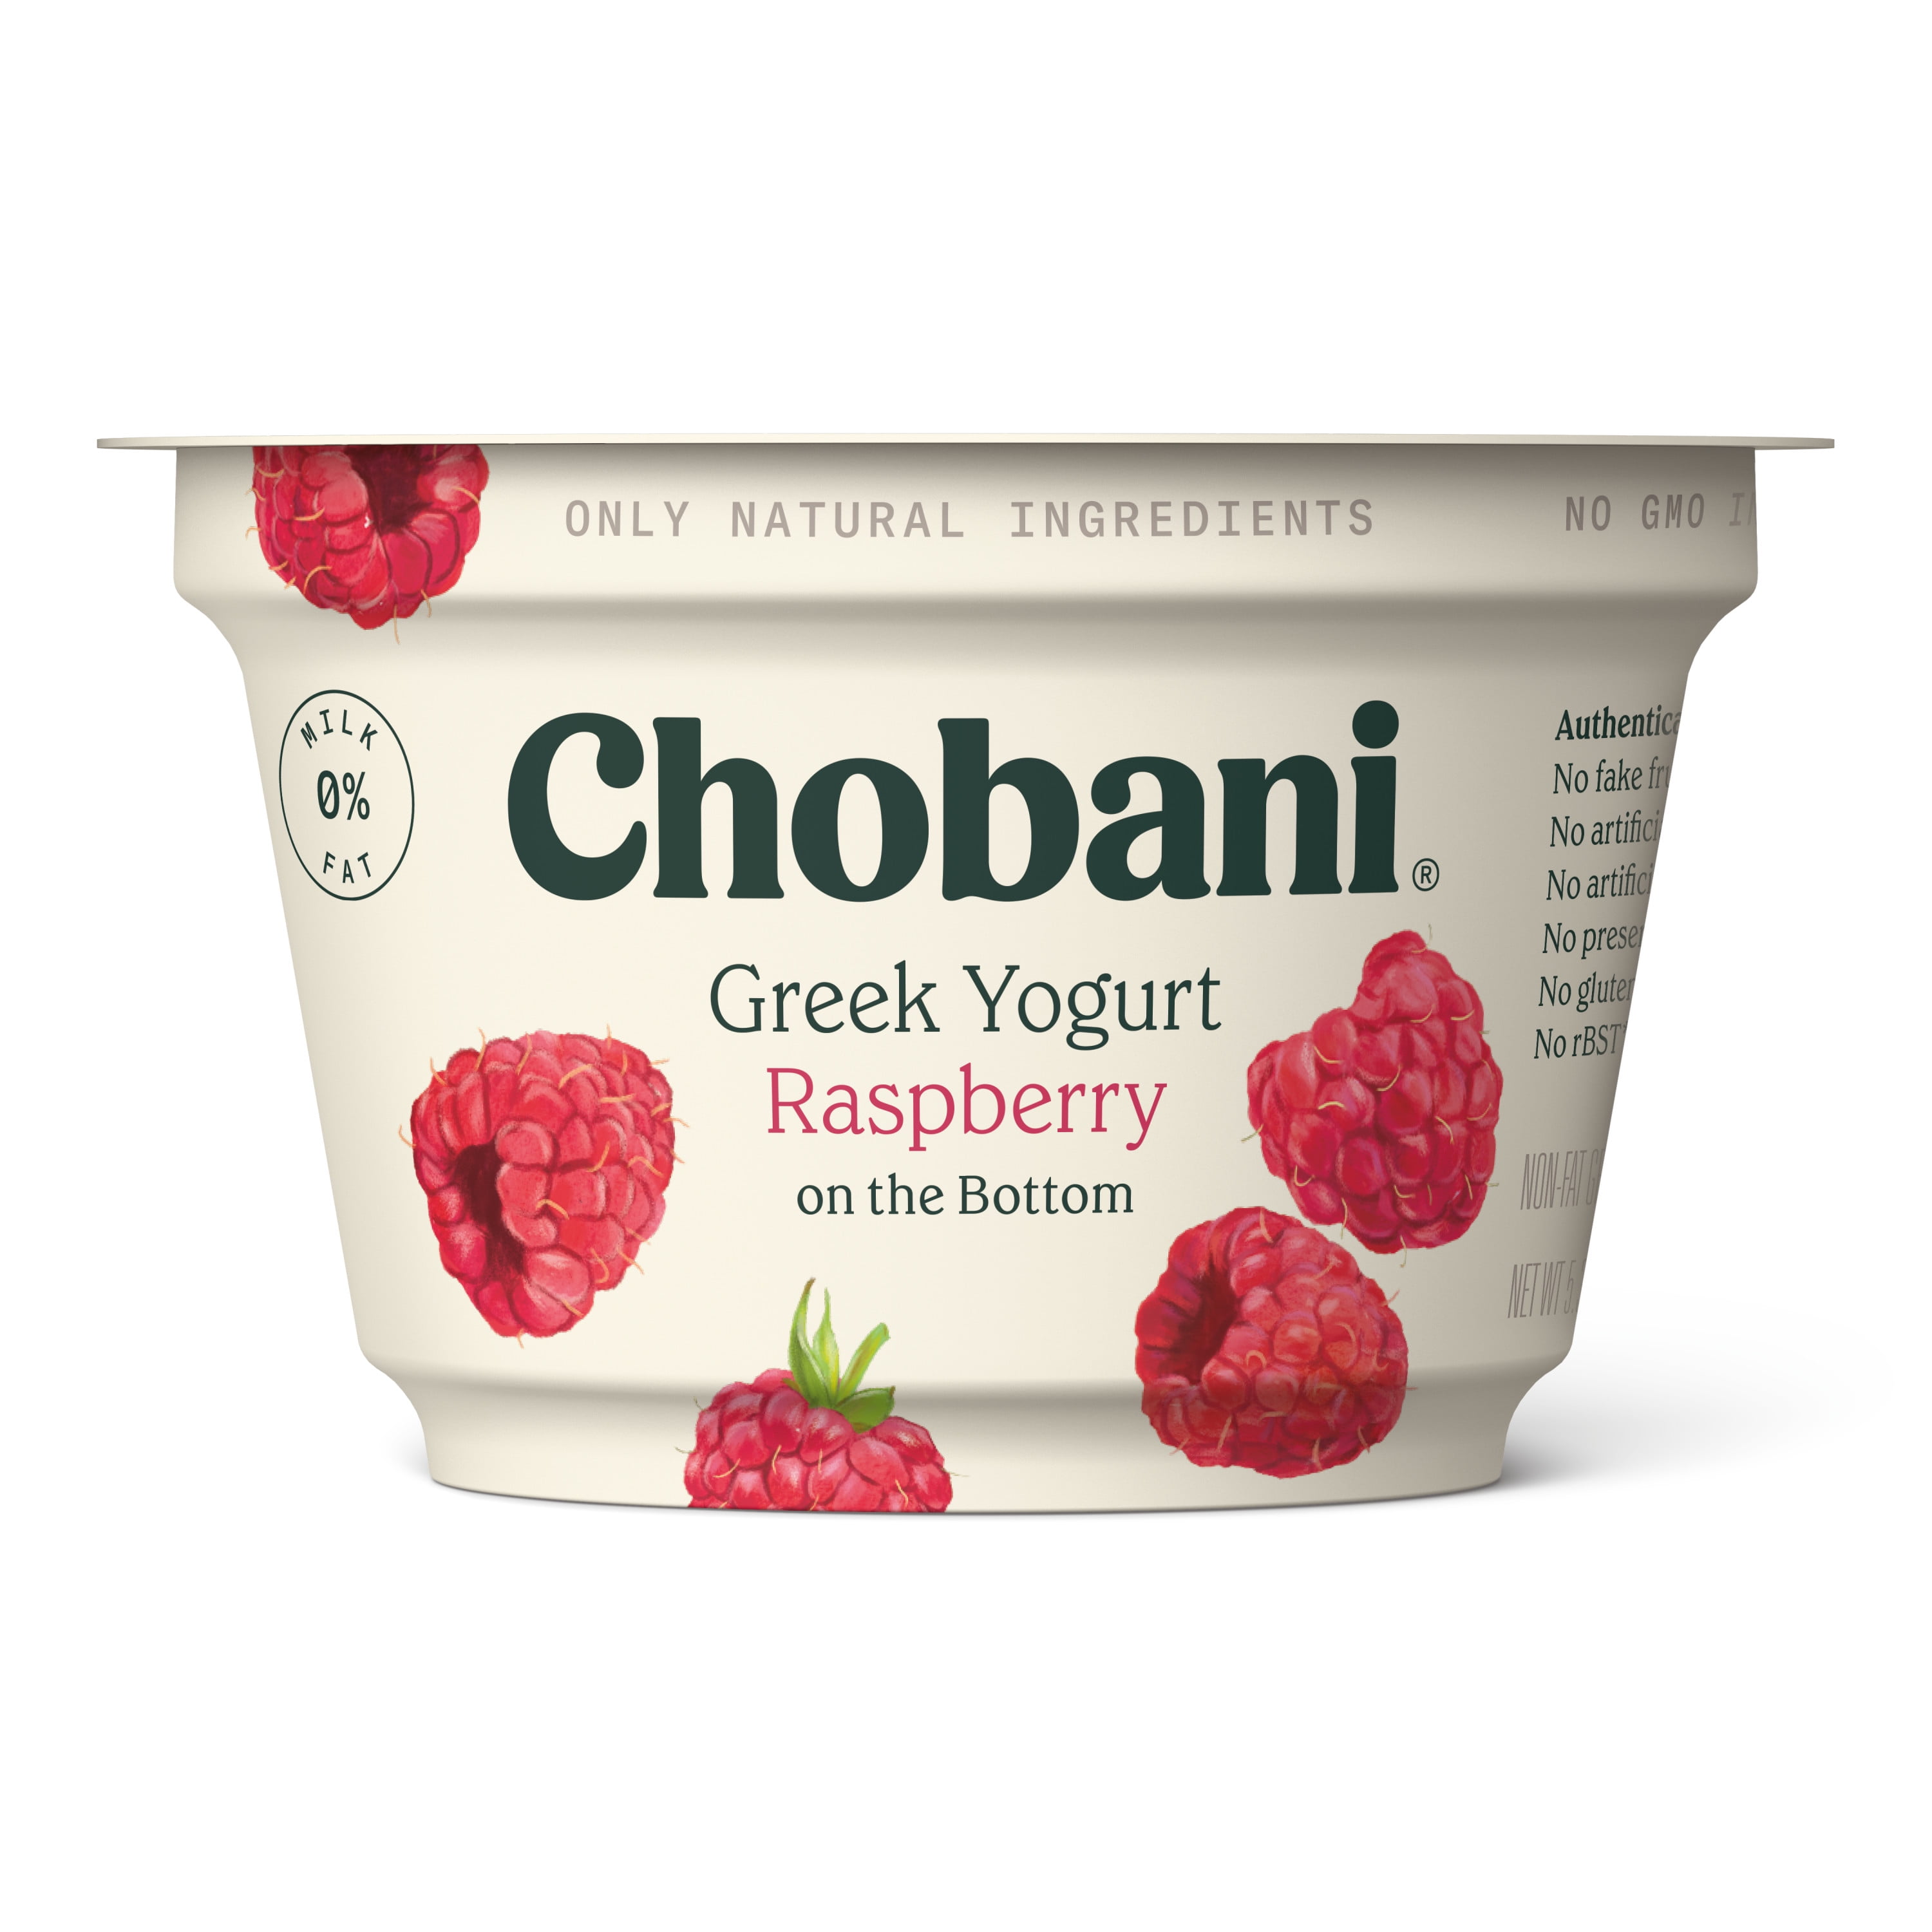 Chobani white chocolate raspberry